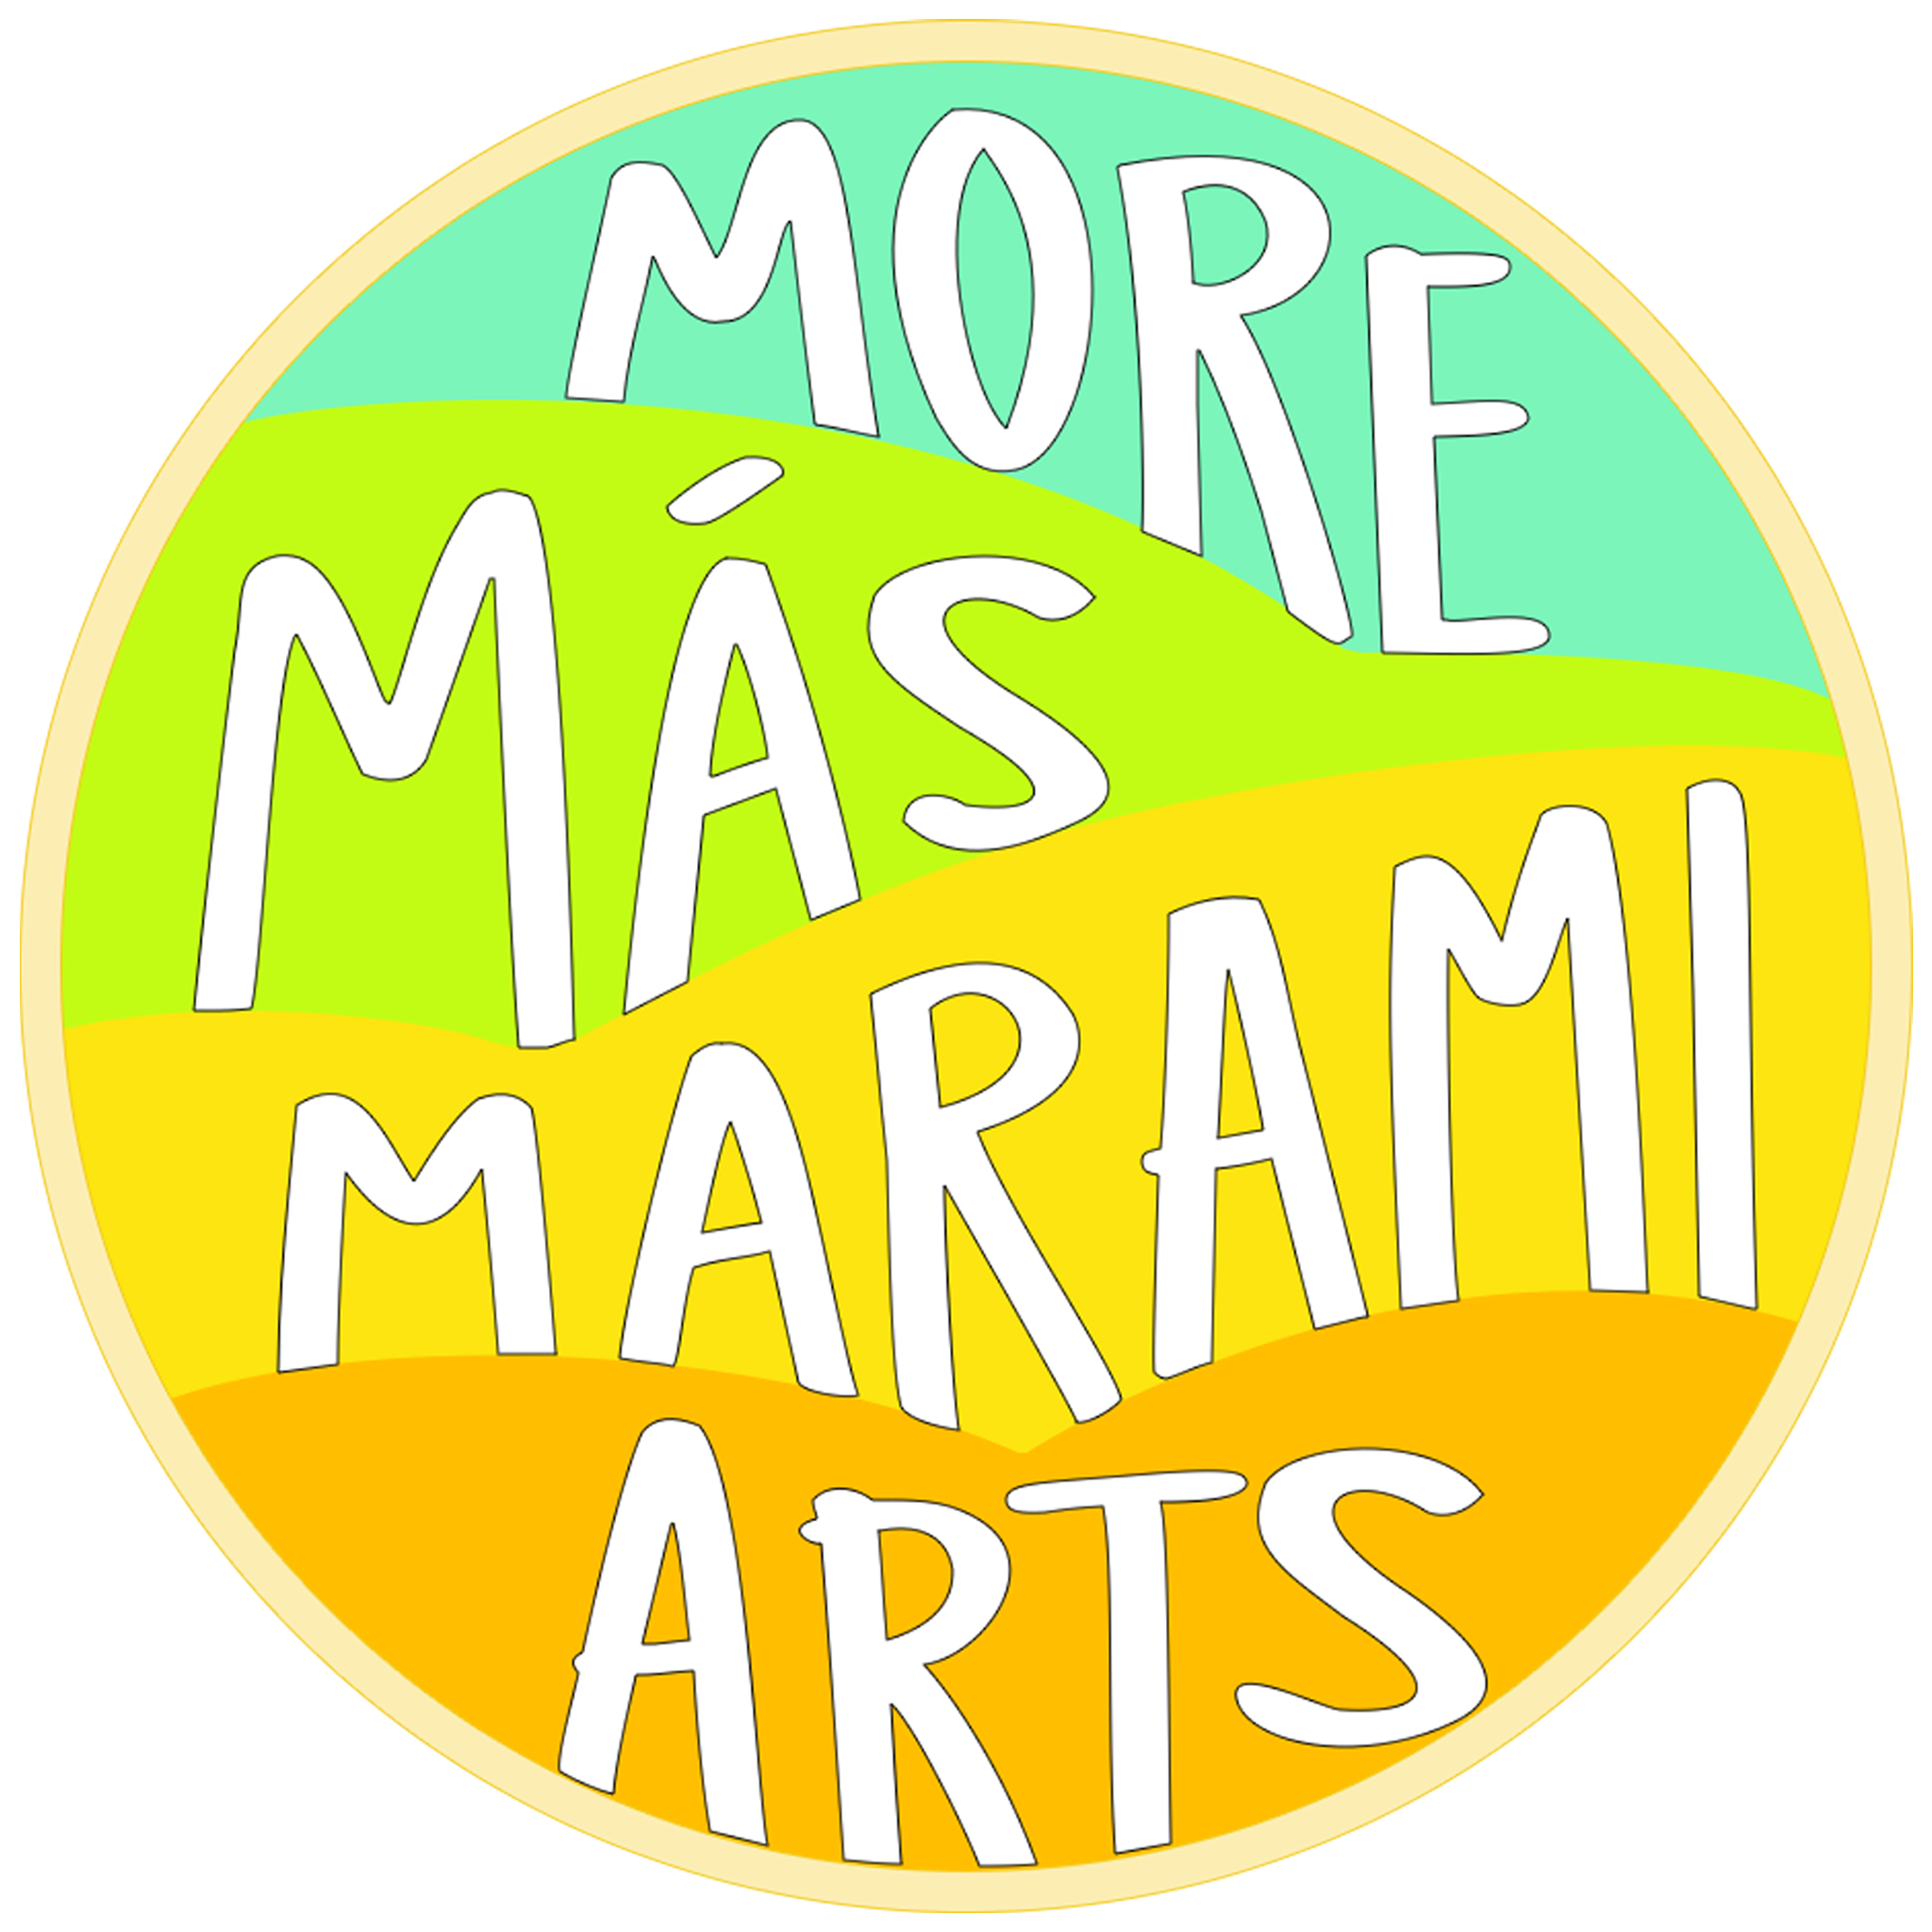 More Más Marami Arts